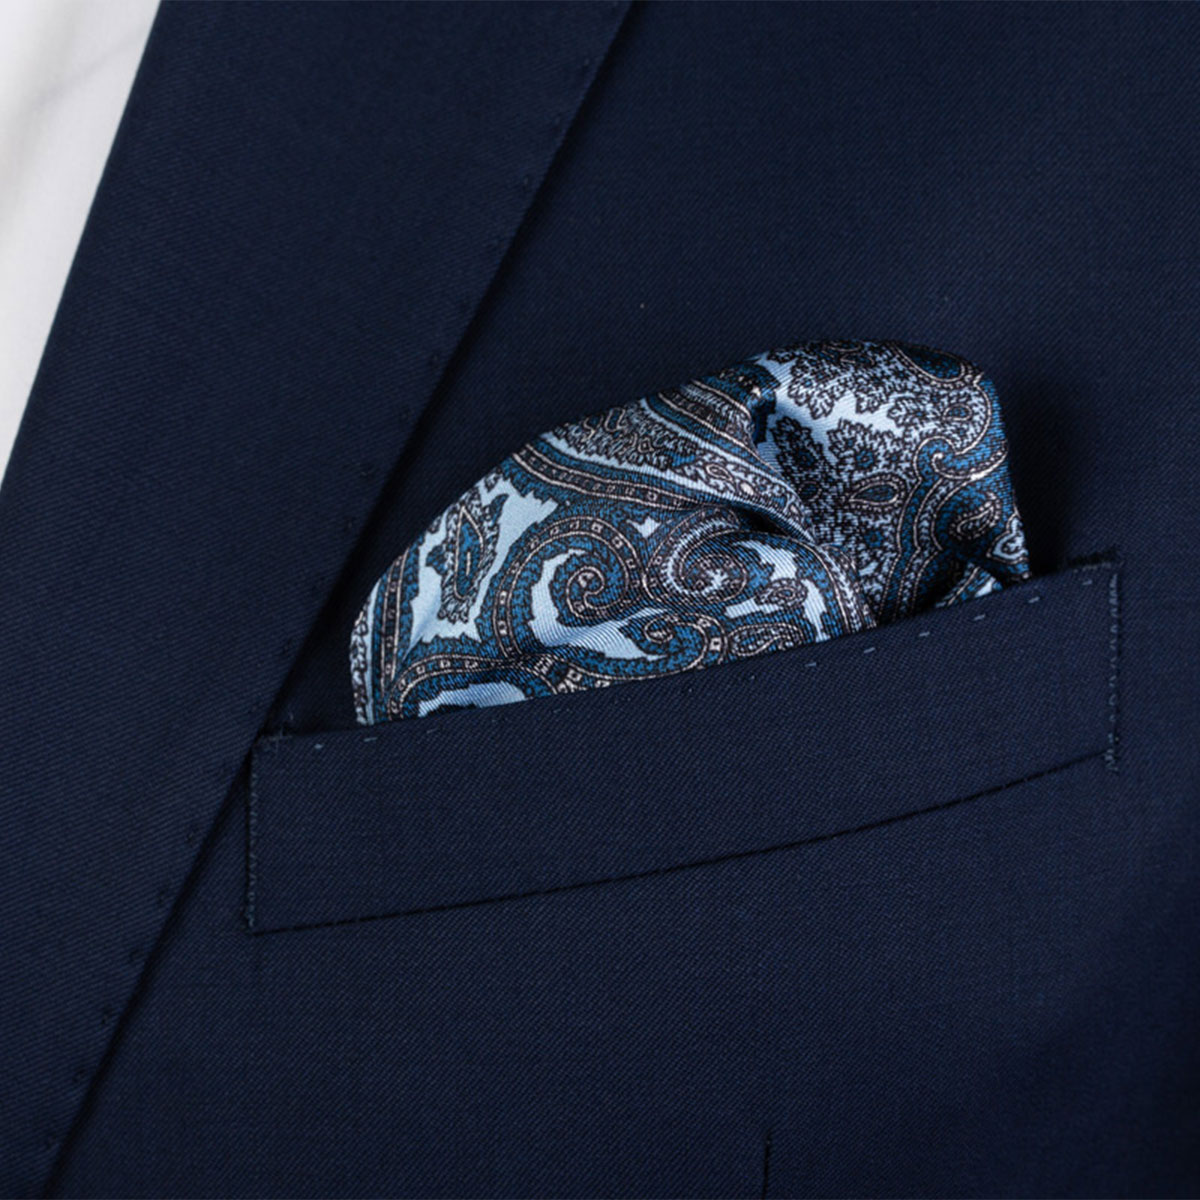 Einstecktuch aus Seidentwill mit Paisley-Muster in blau-braun in Brusttasche